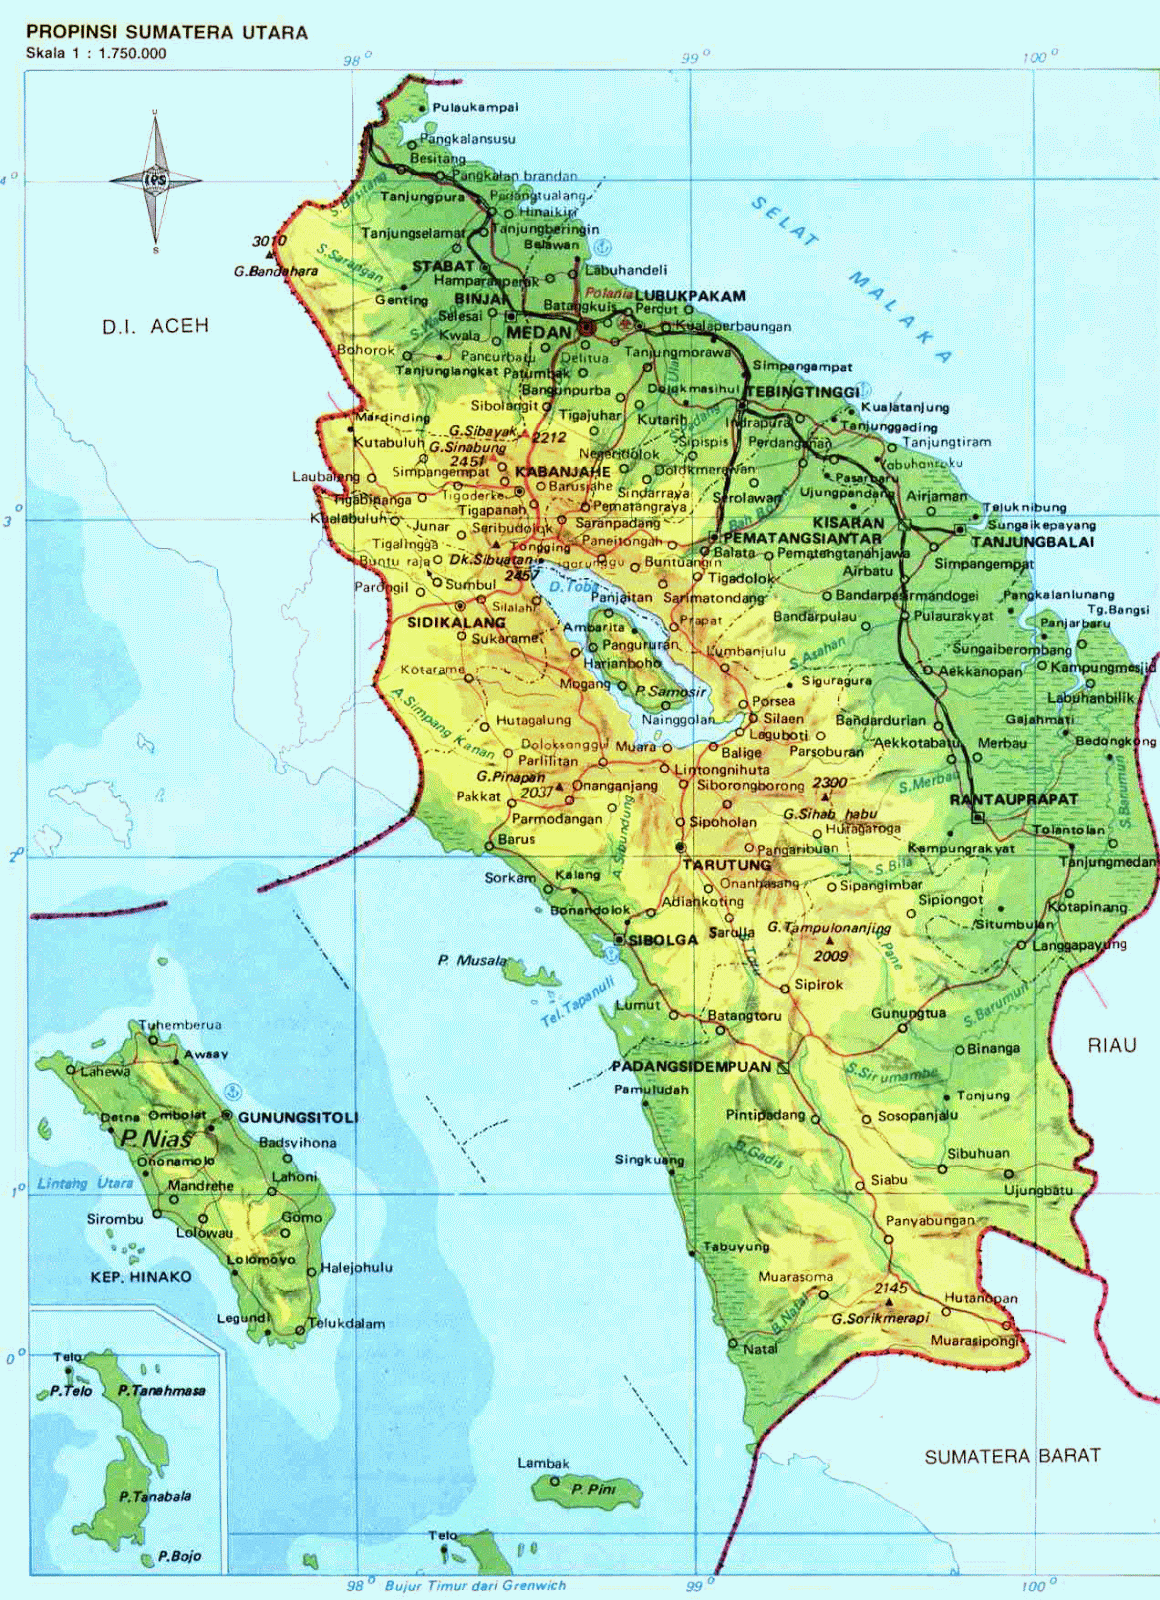 AMAZING INDONESIA: North Sumatra Province Map